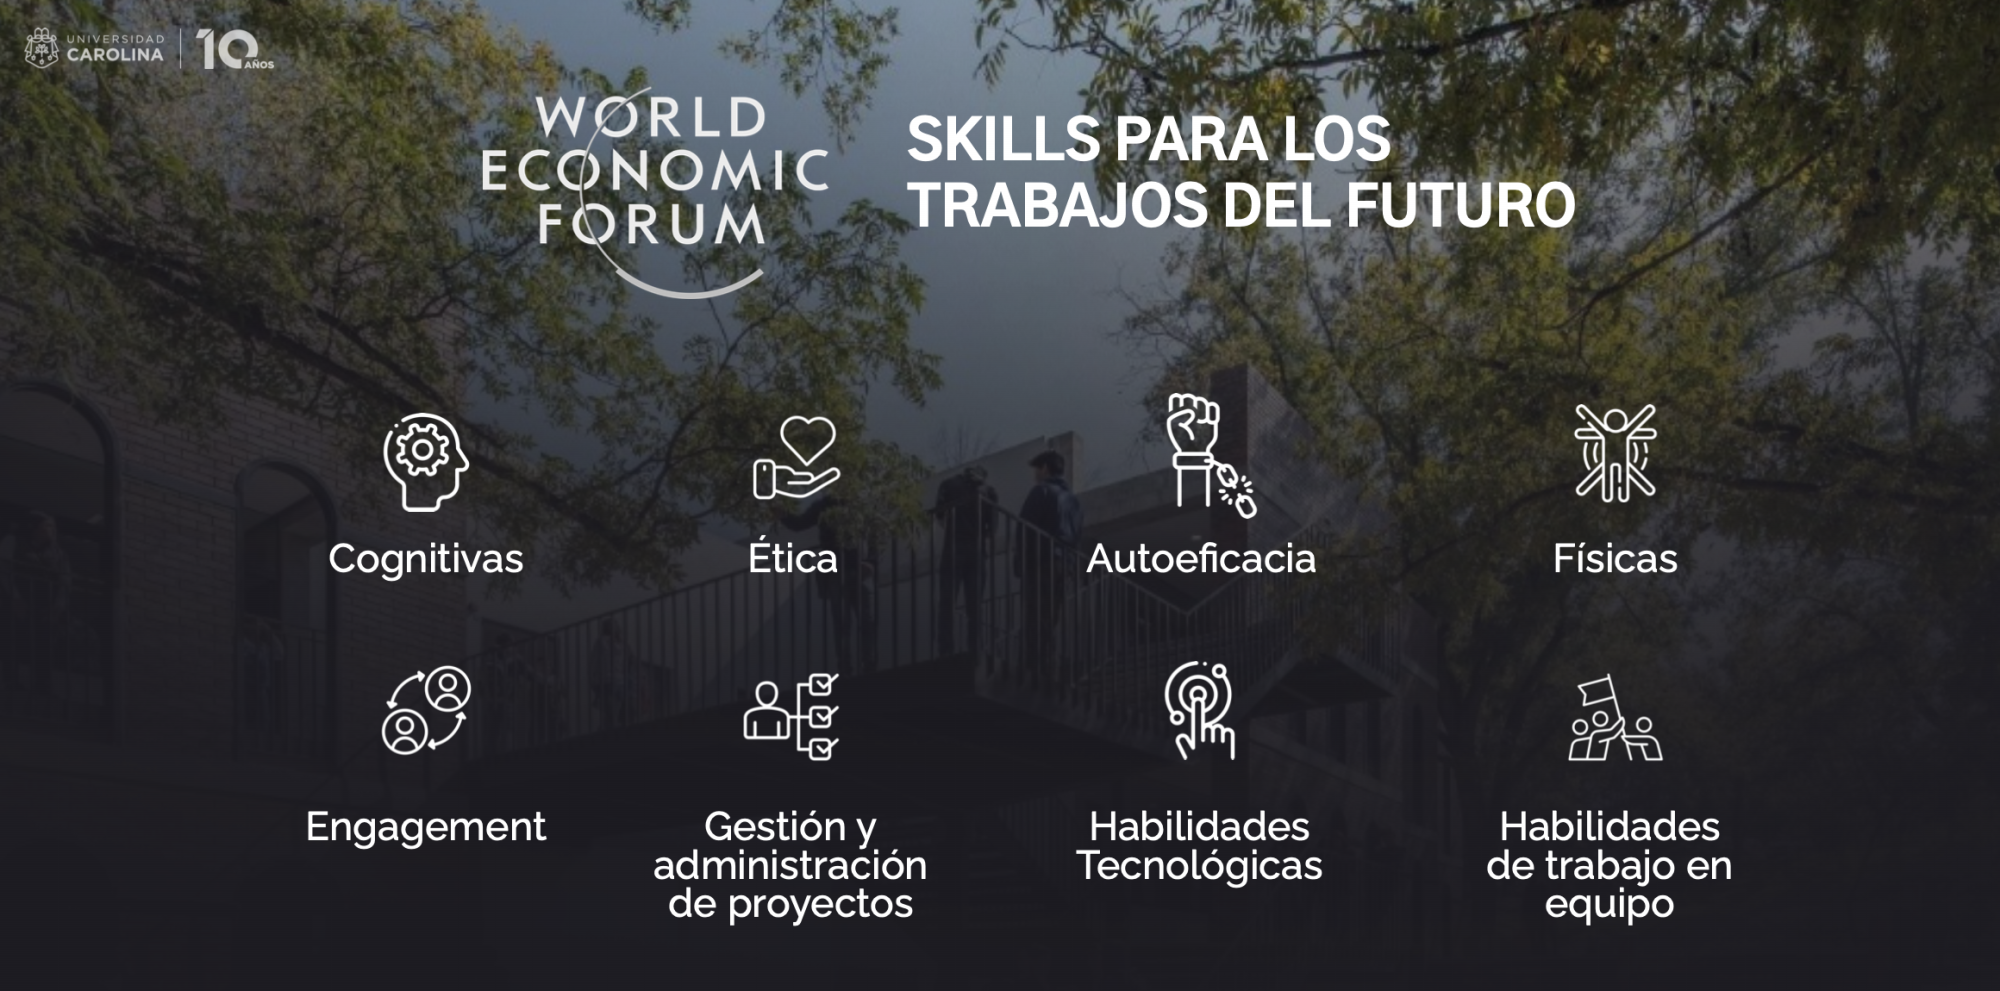 $!Estas son las ocho habilidades que el Foro Económico Mundial considera que es necesario desarrollar hoy para ejercer los trabajos del mañana. ¿Cómo te encuentras tú en cuanto a la mejora de dichos skills?